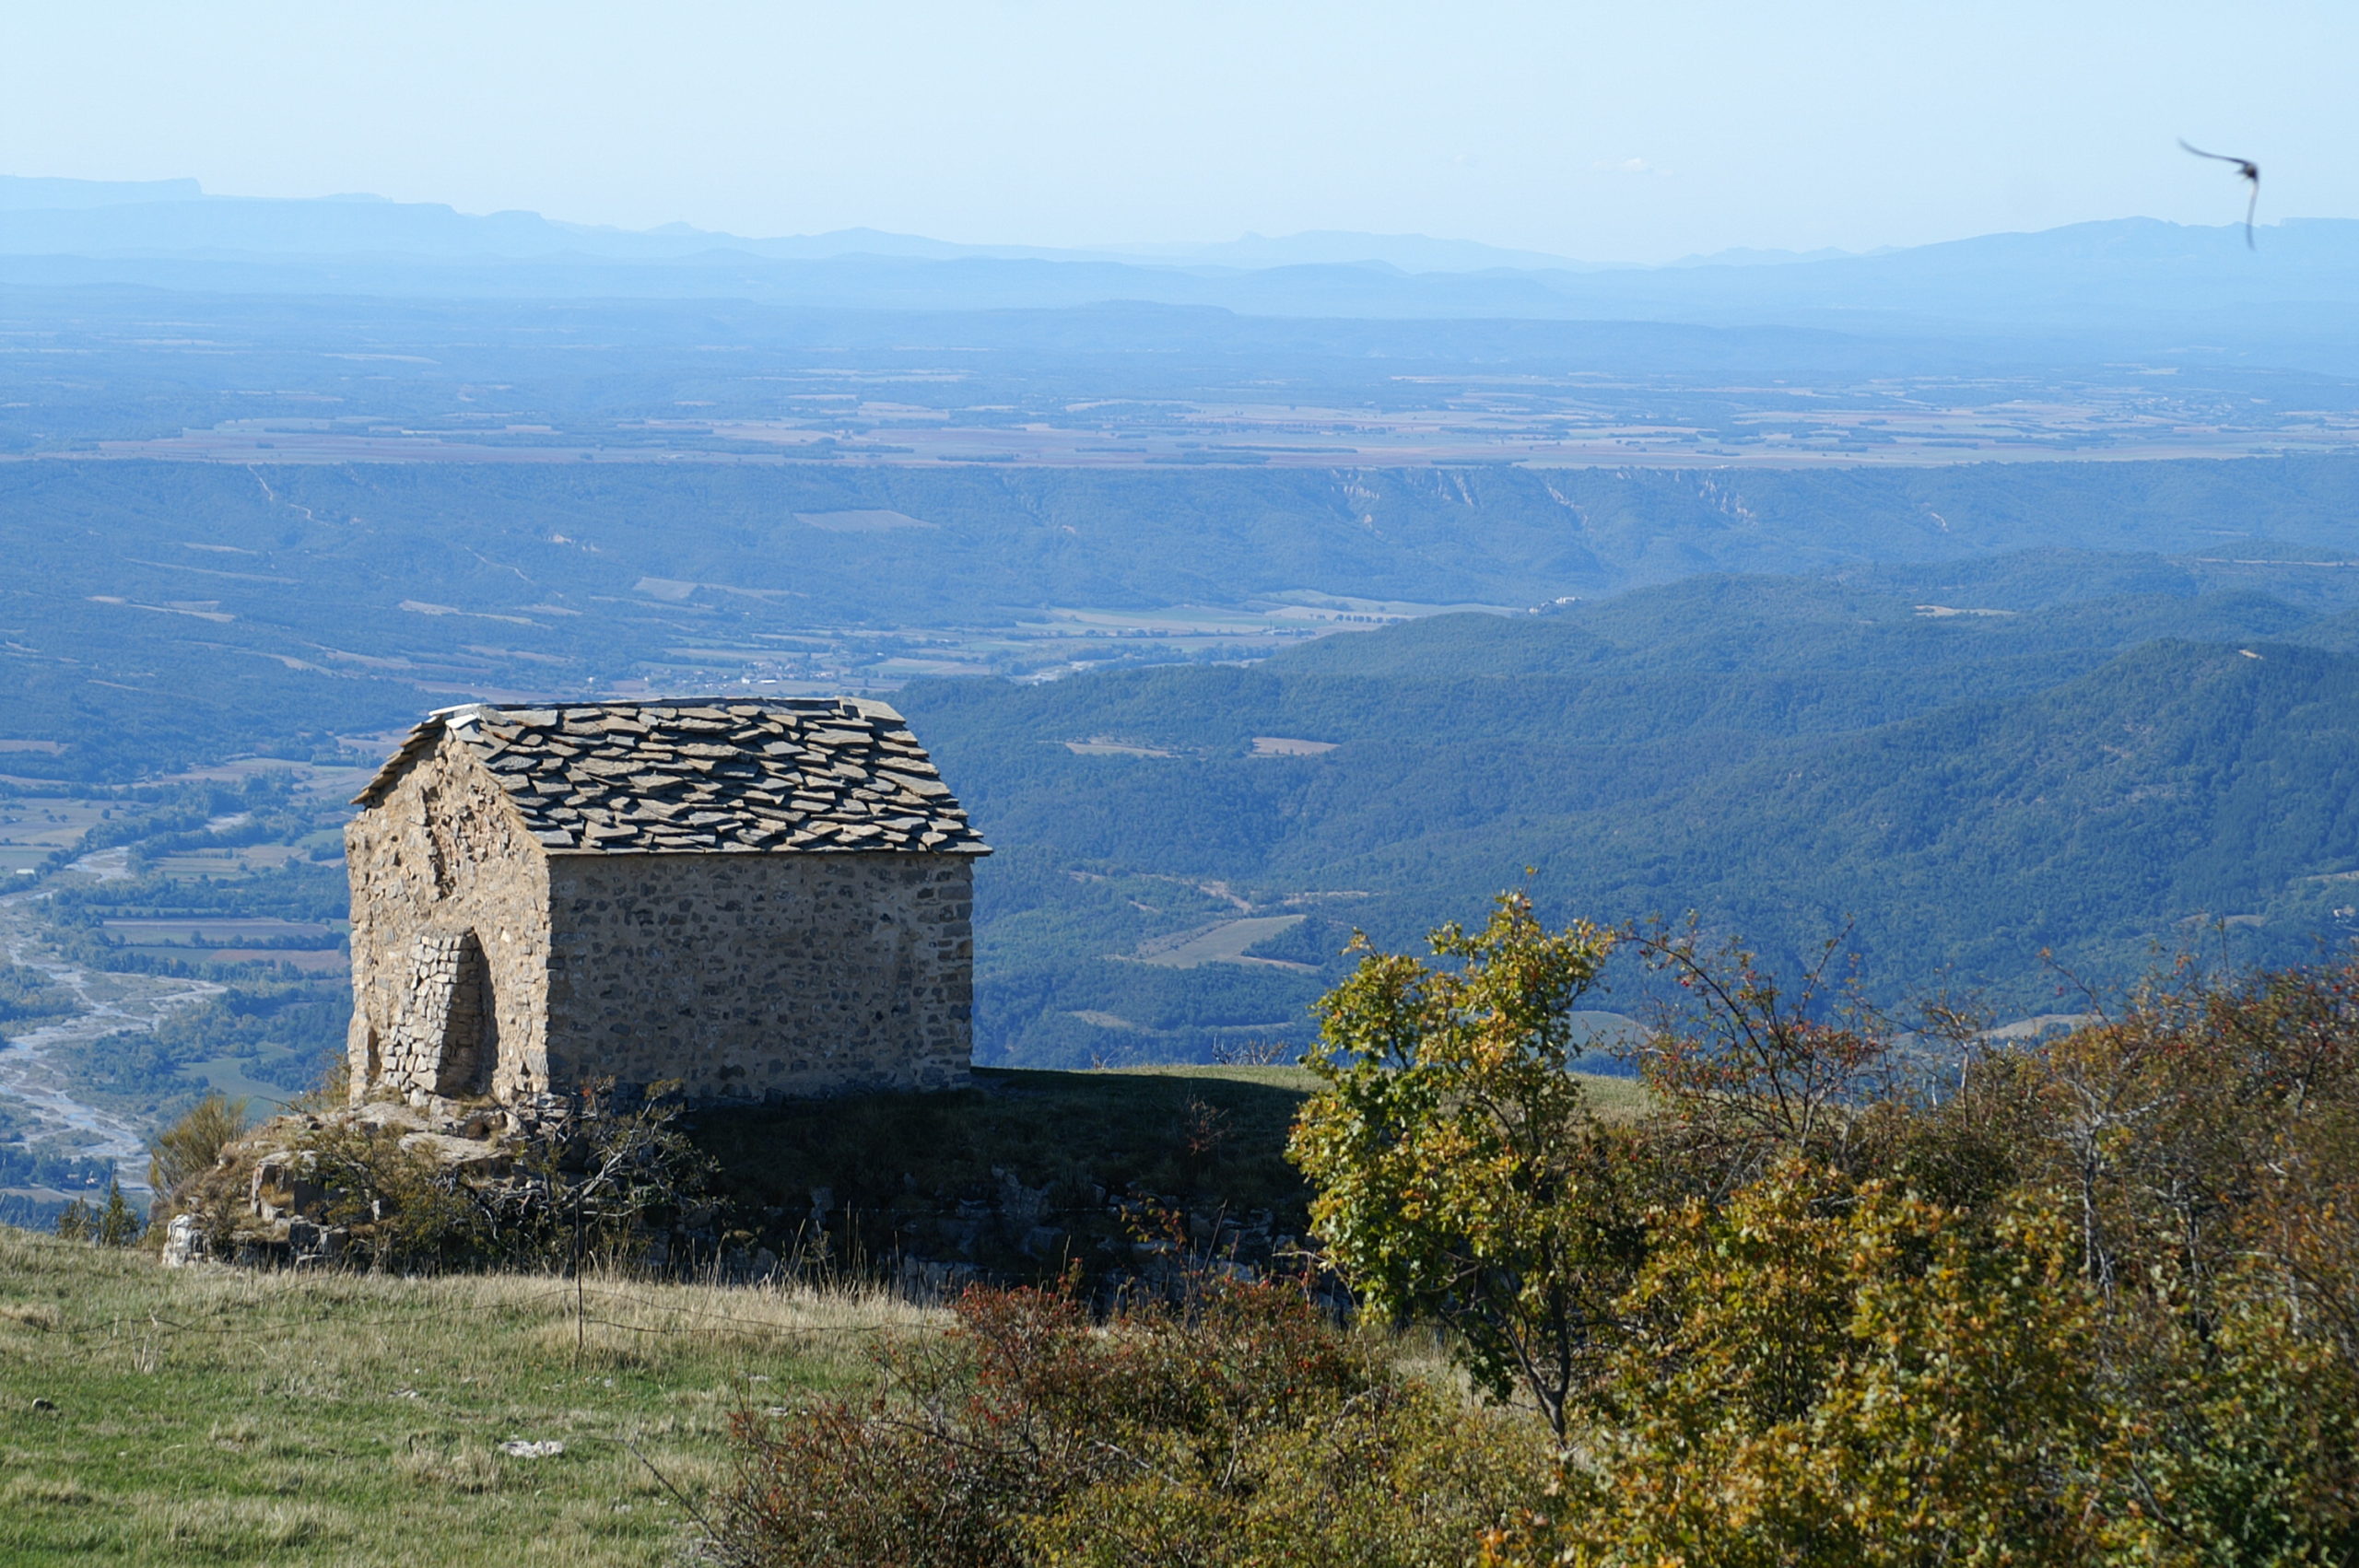 Unesco Geoparc de Haute Provence